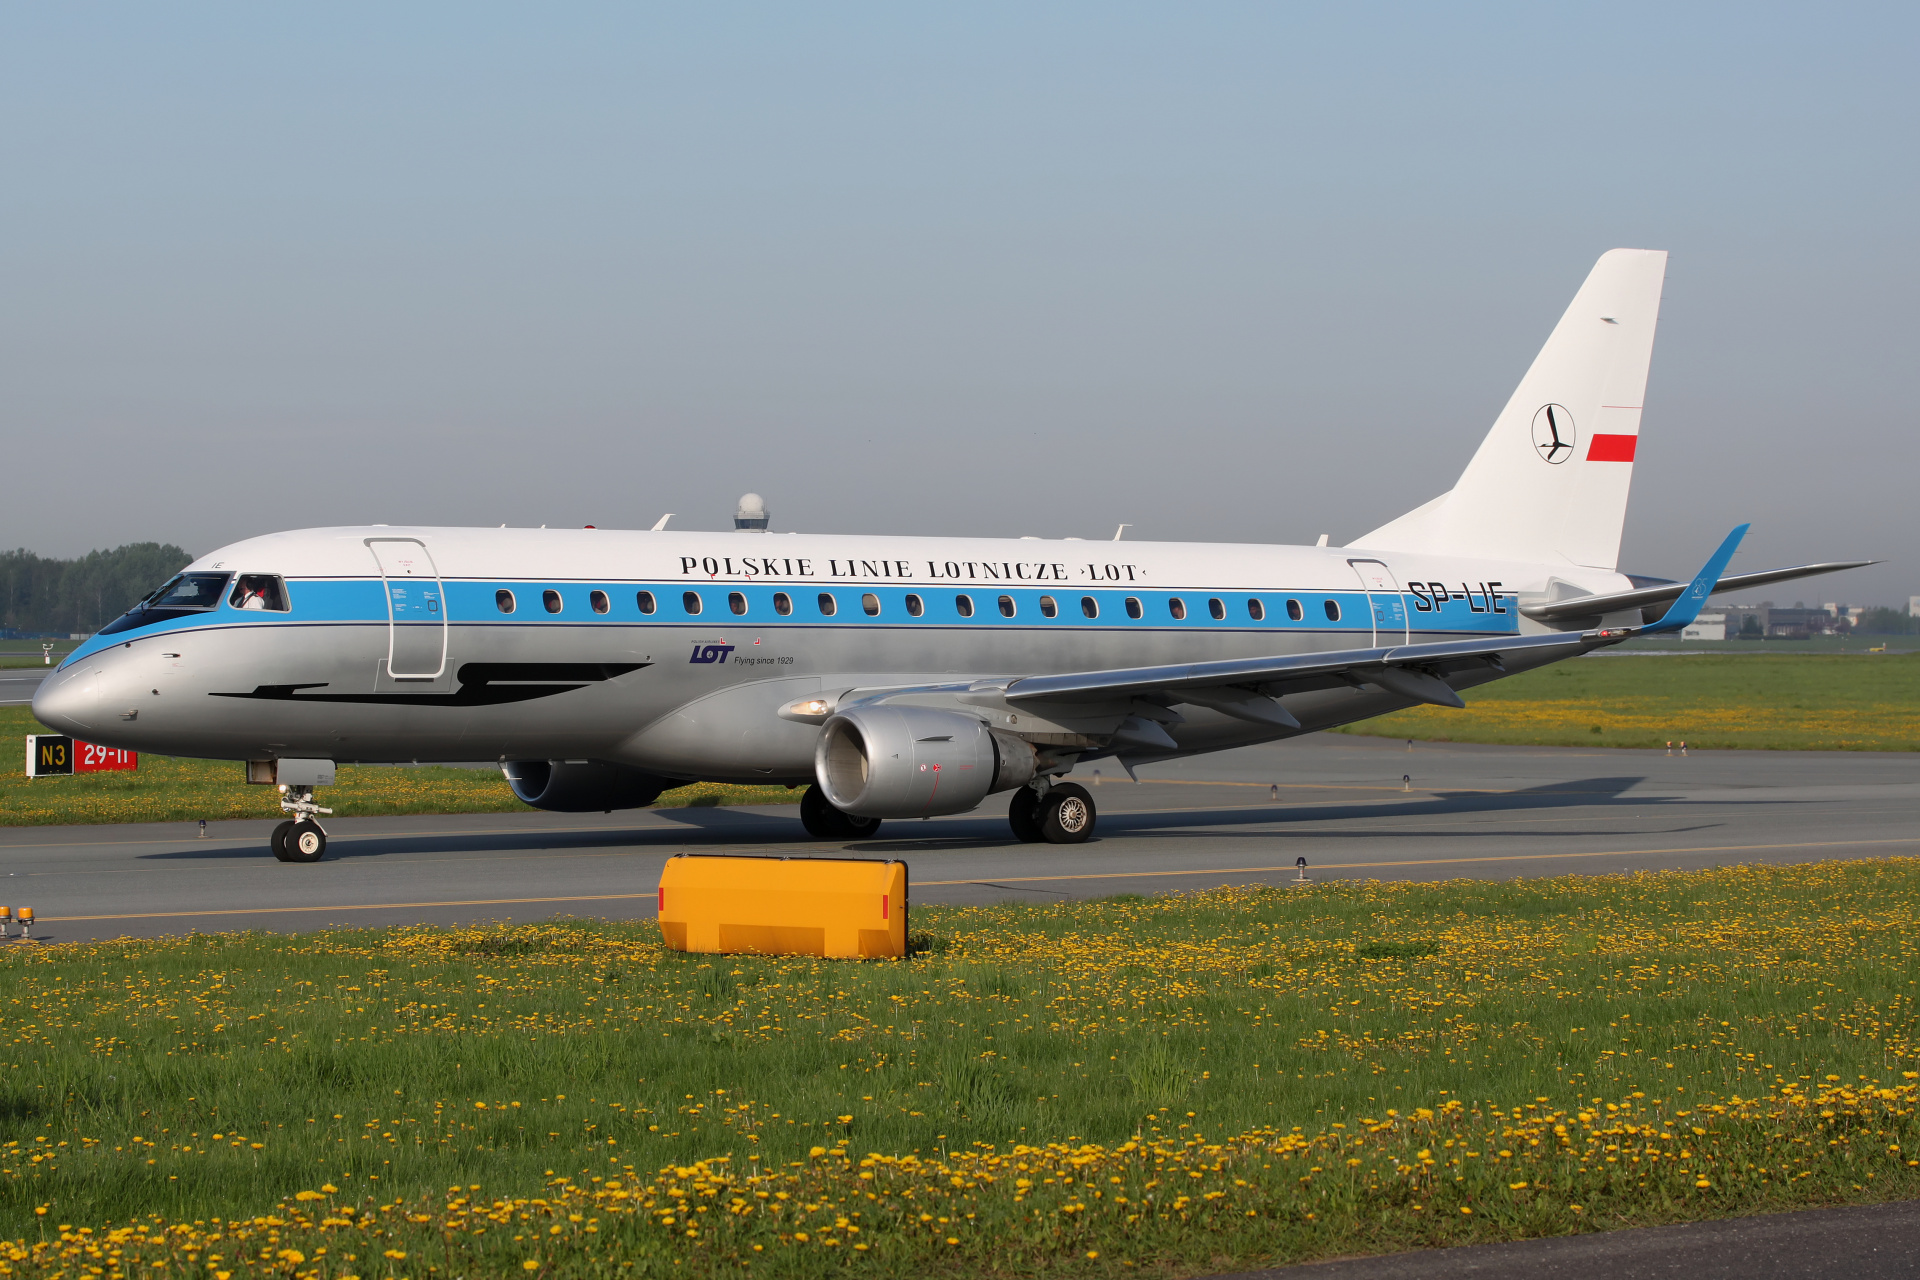 SP-LIE (retro livery) (Aircraft » EPWA Spotting » Embraer E175 » LOT Polish Airlines)